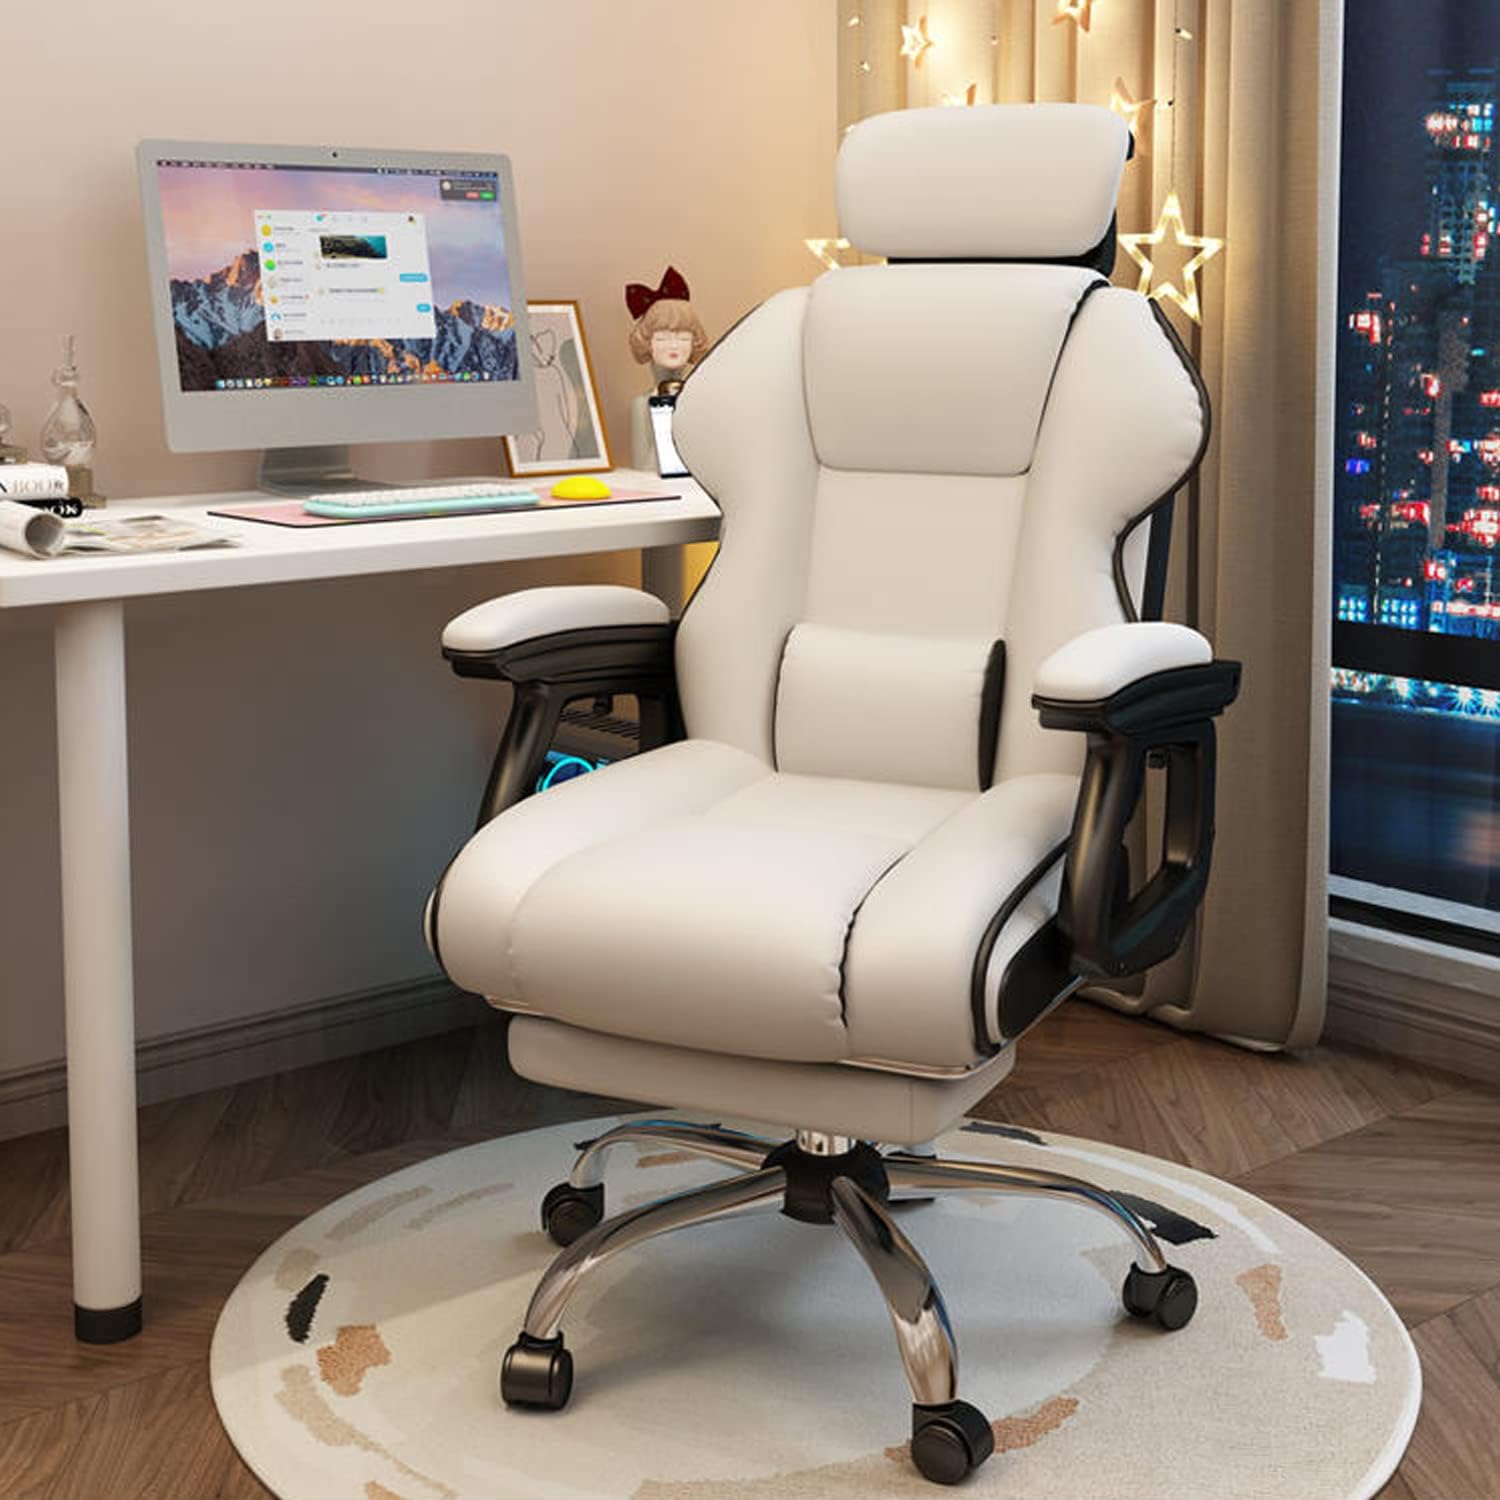 社長椅子 オフィスチェア 360度回転昇降機能 リクライニングチェア 肉 